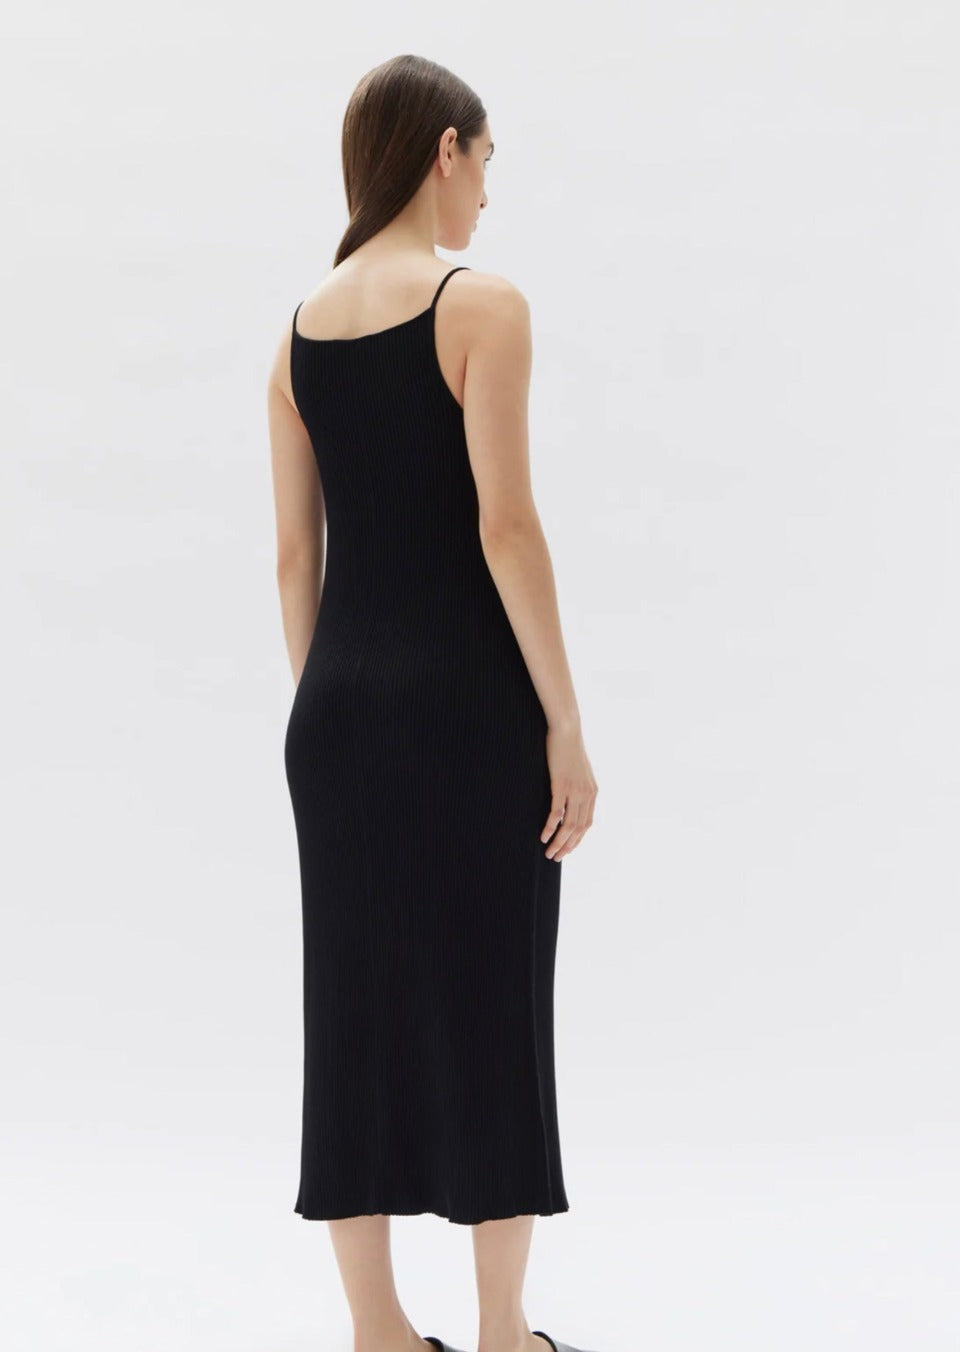 Freya Knit Dress Black